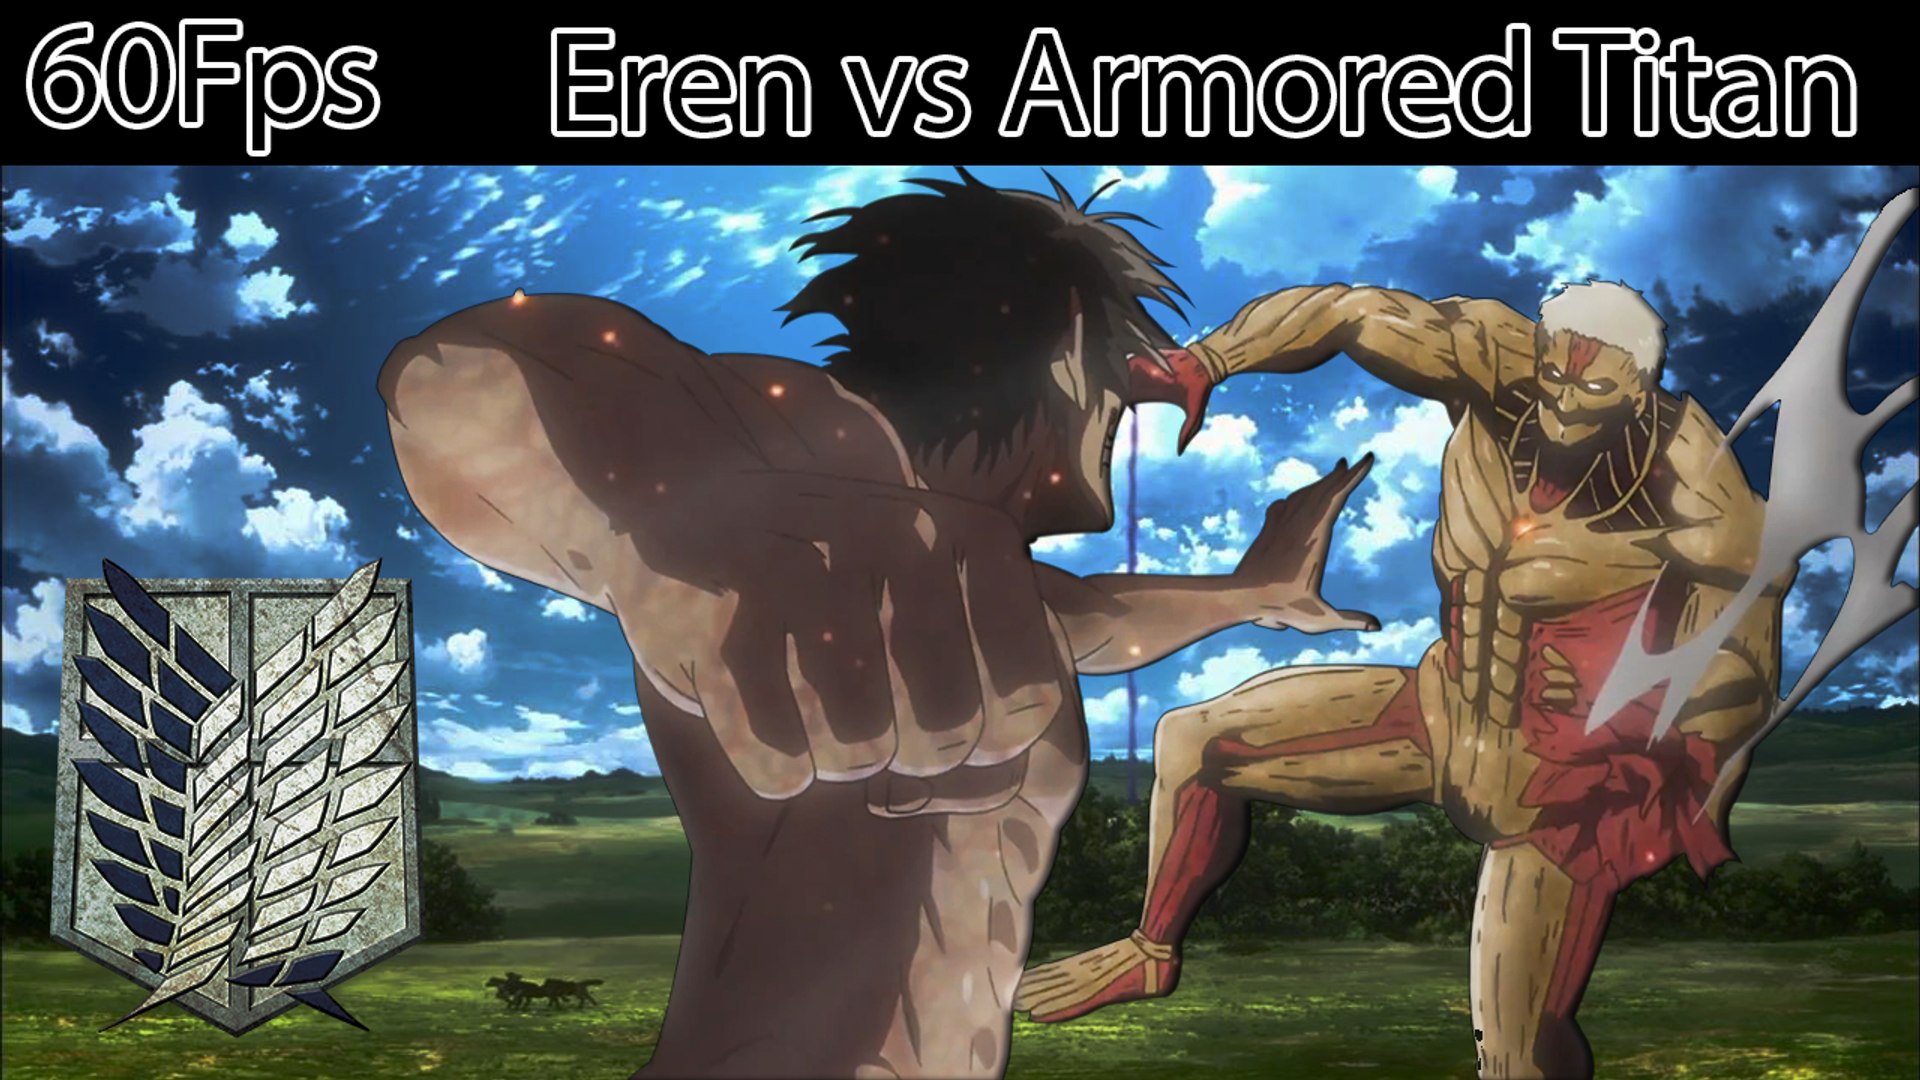 eren vs armored titan wallpaper